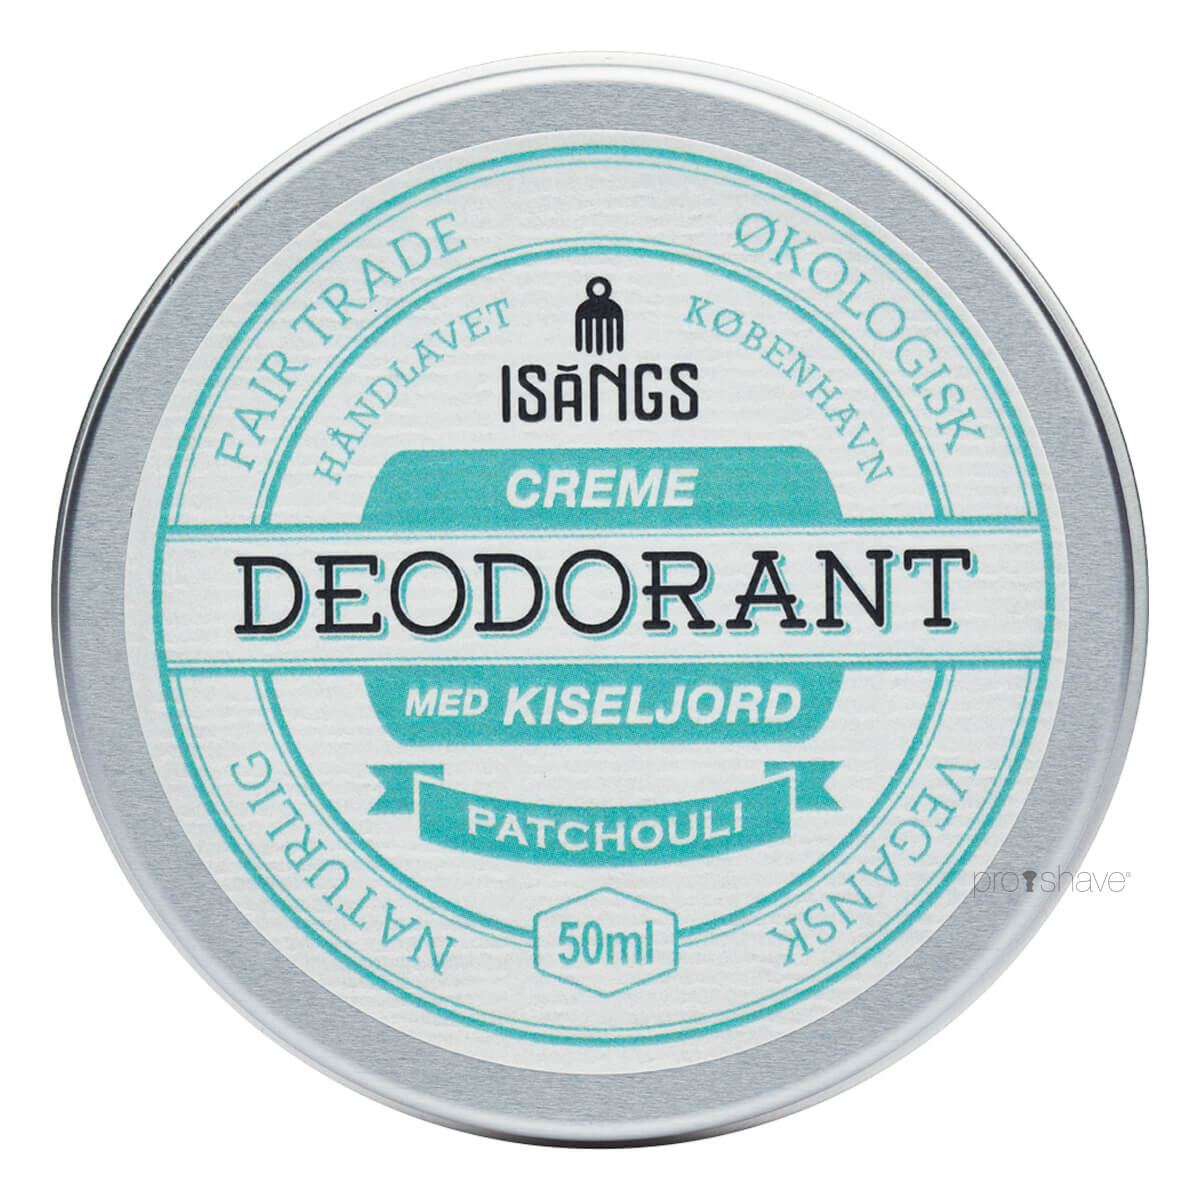 Isangs Creme Deodorant med Kiseljord, Patchouli, 50 ml.